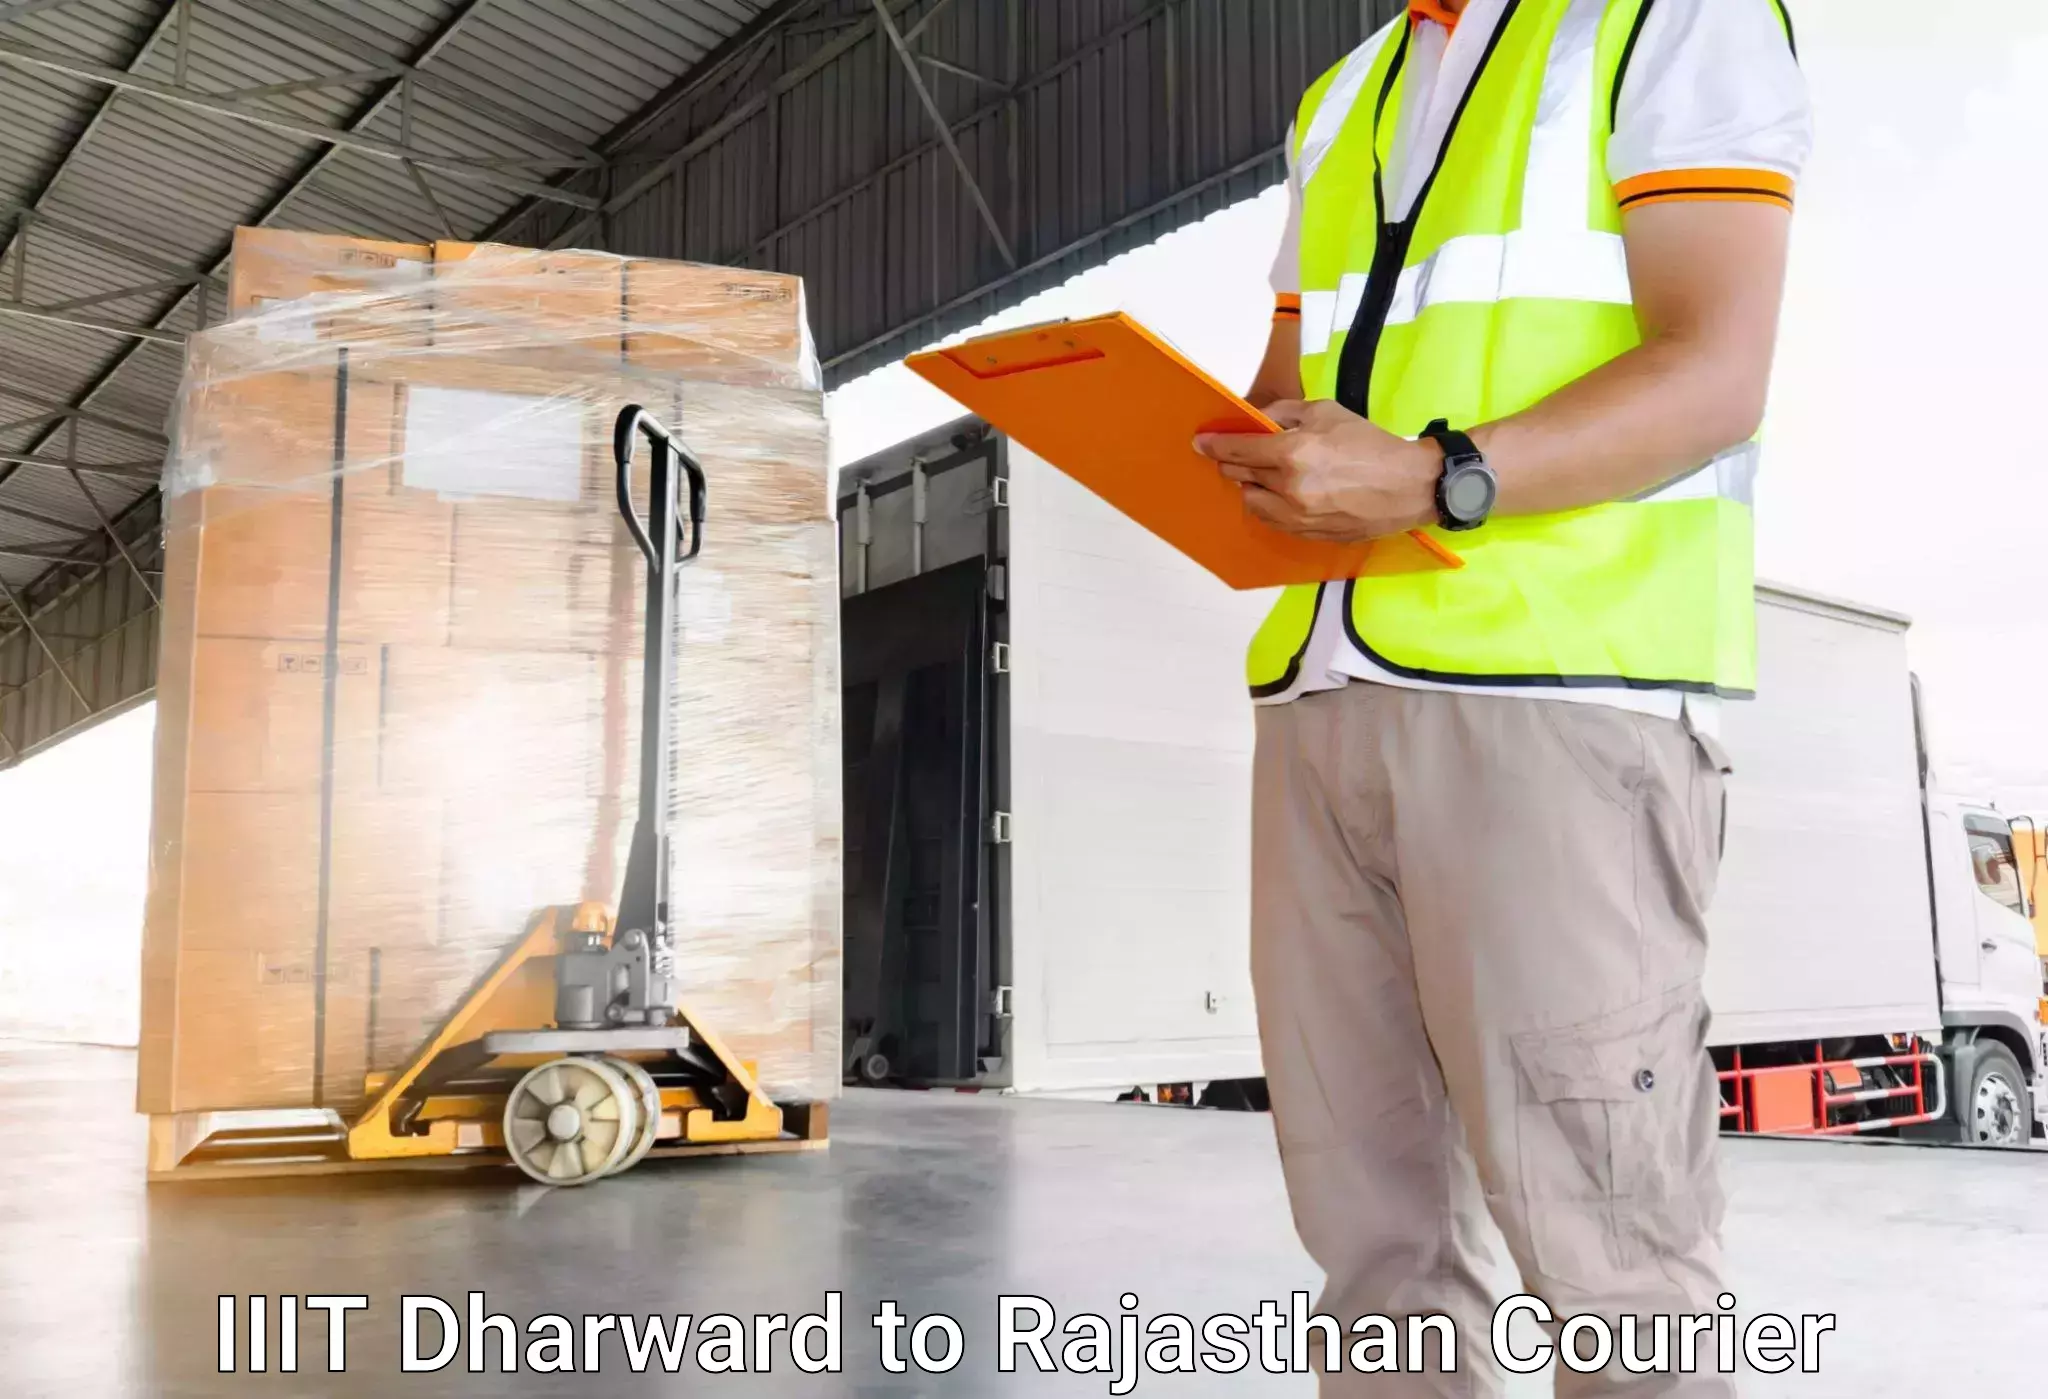 Luggage transport service IIIT Dharward to Makrana